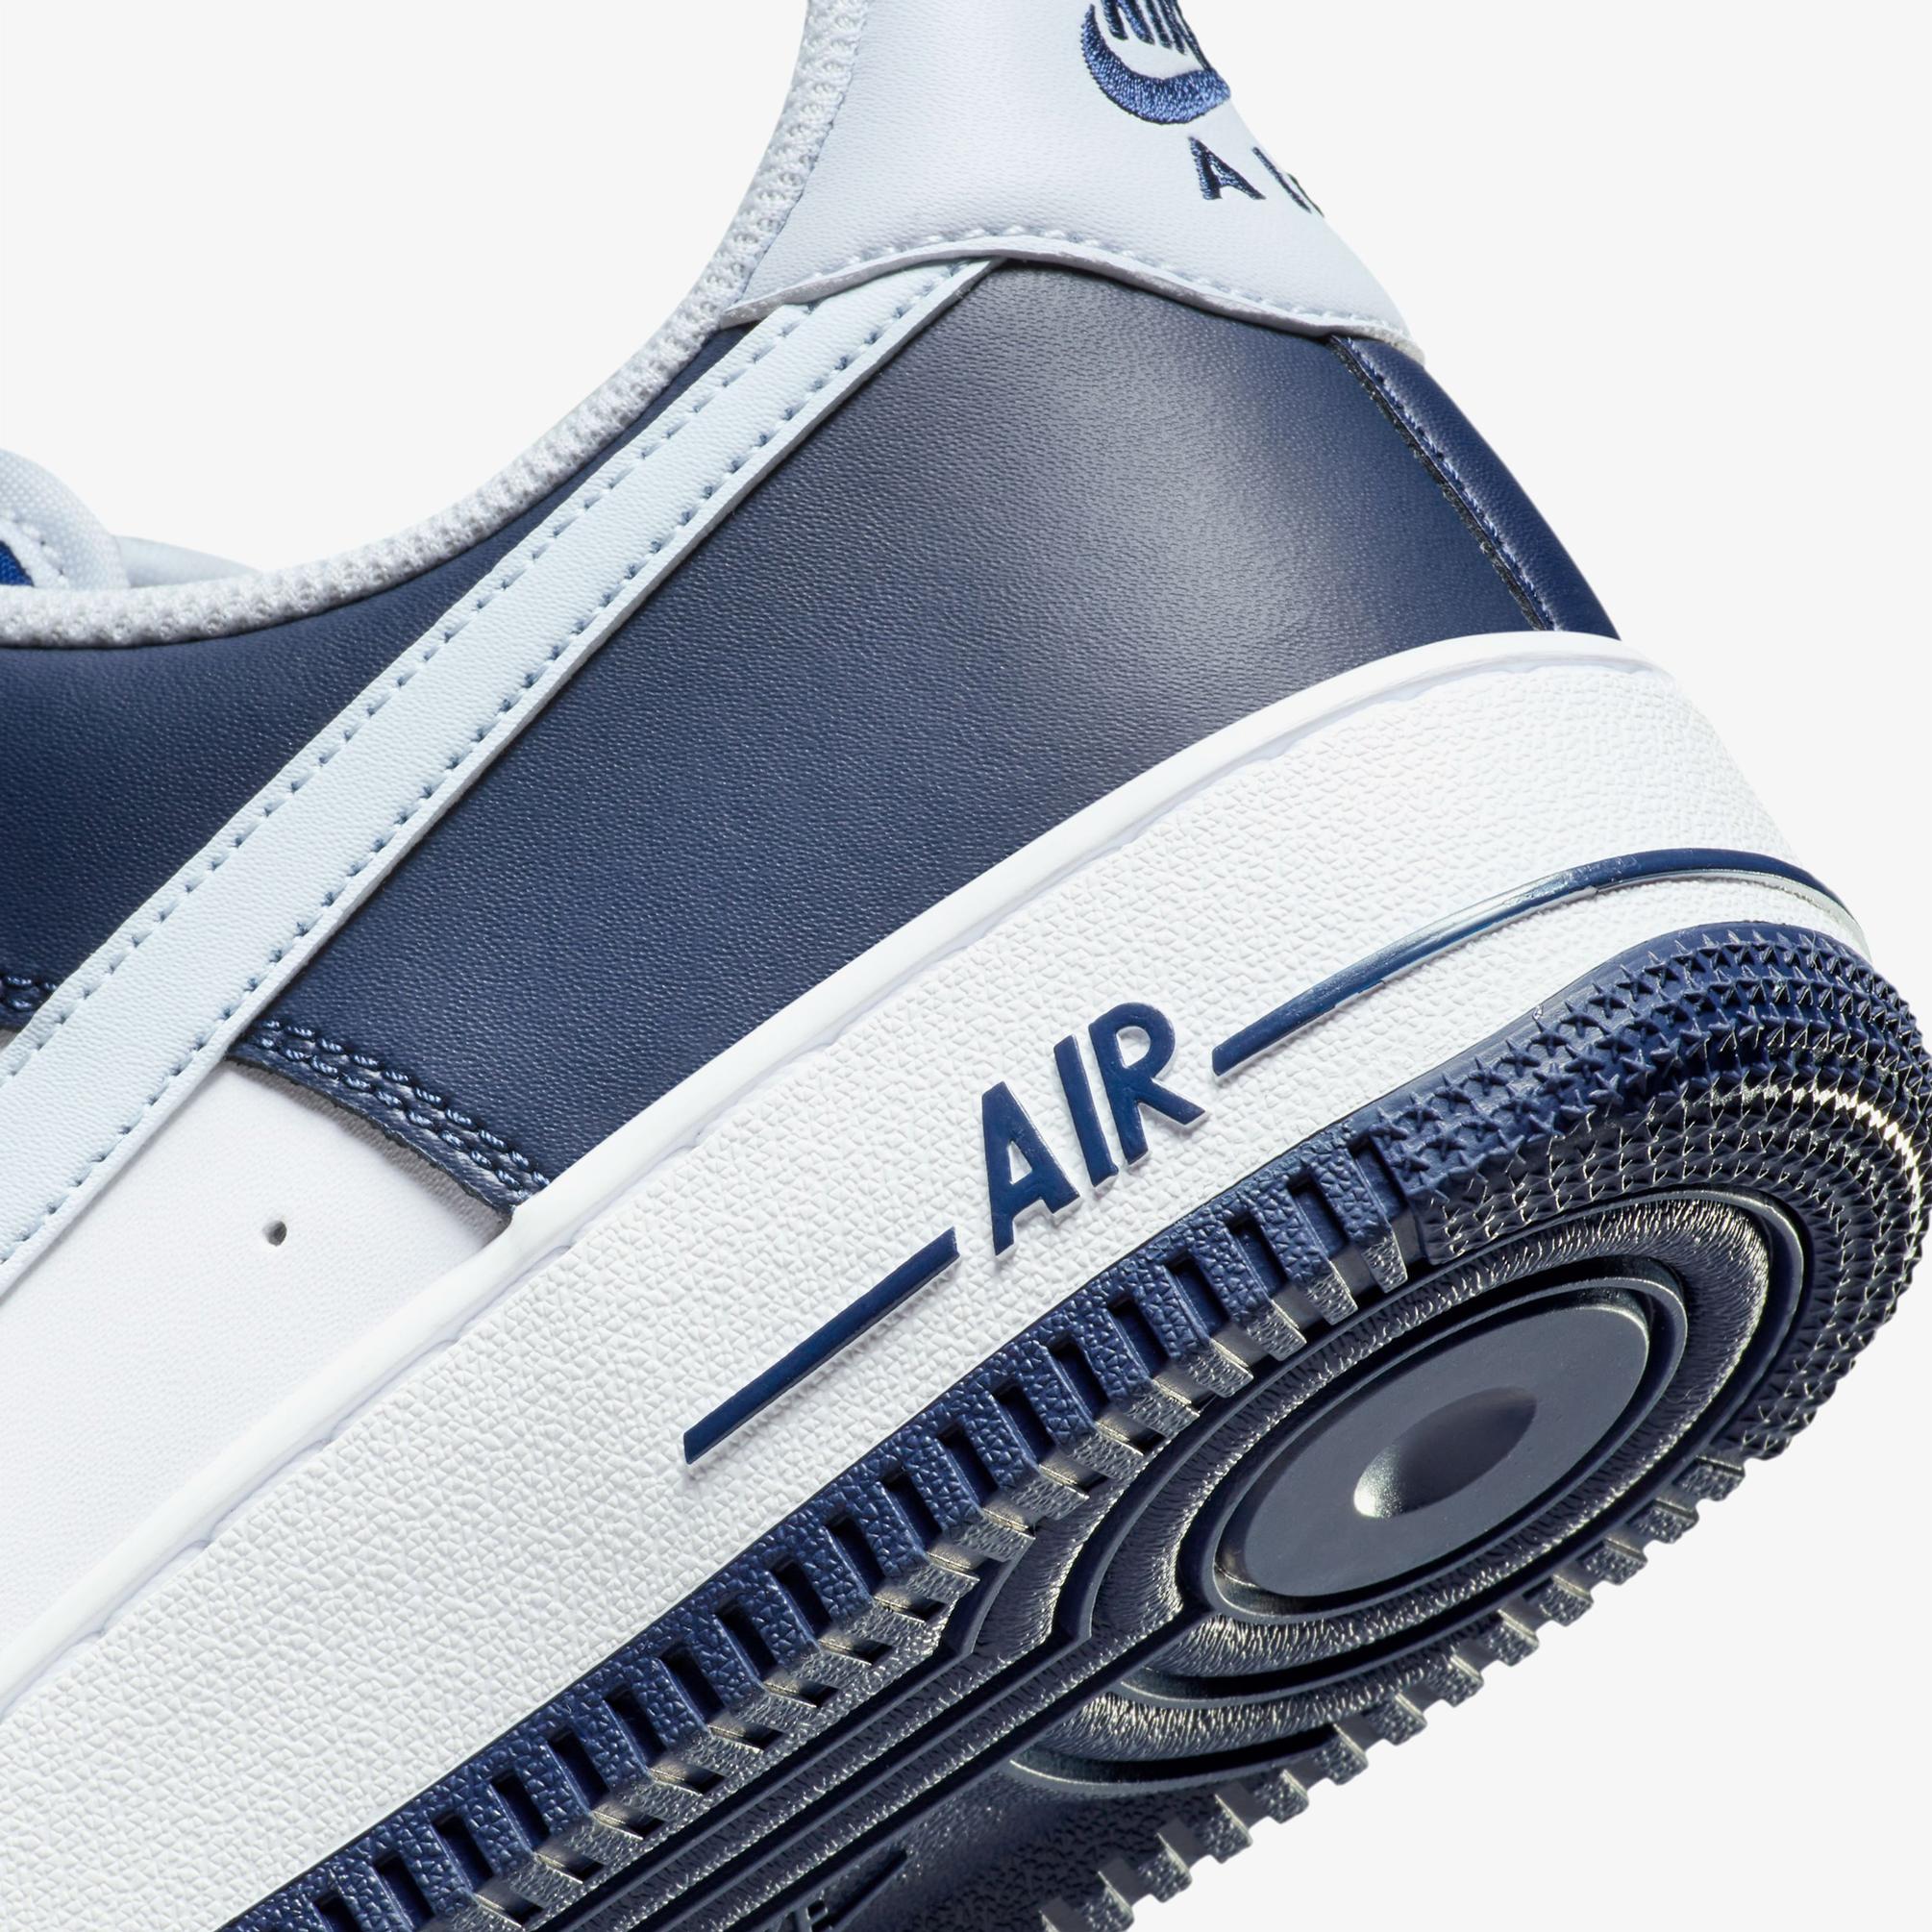  Nike Air Force 1 07 Lv8 Erkek Beyaz Sneaker